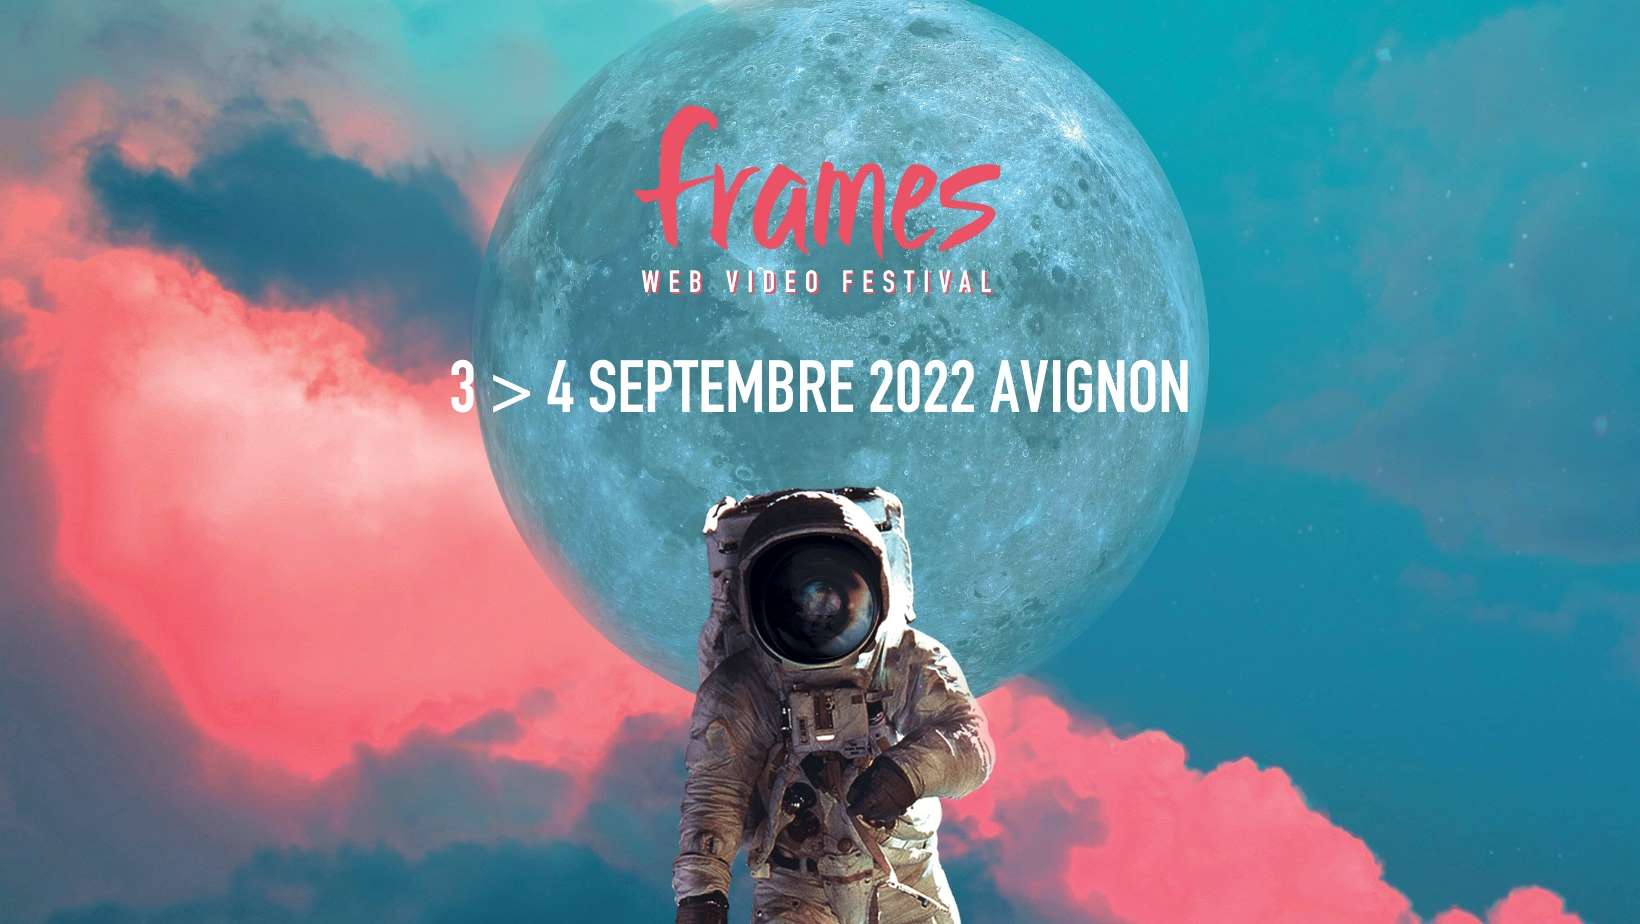 Le FRAMES Web Video Festival d'Avignon recevra une trentaine de vidéastes du 3 au 4 septembre.